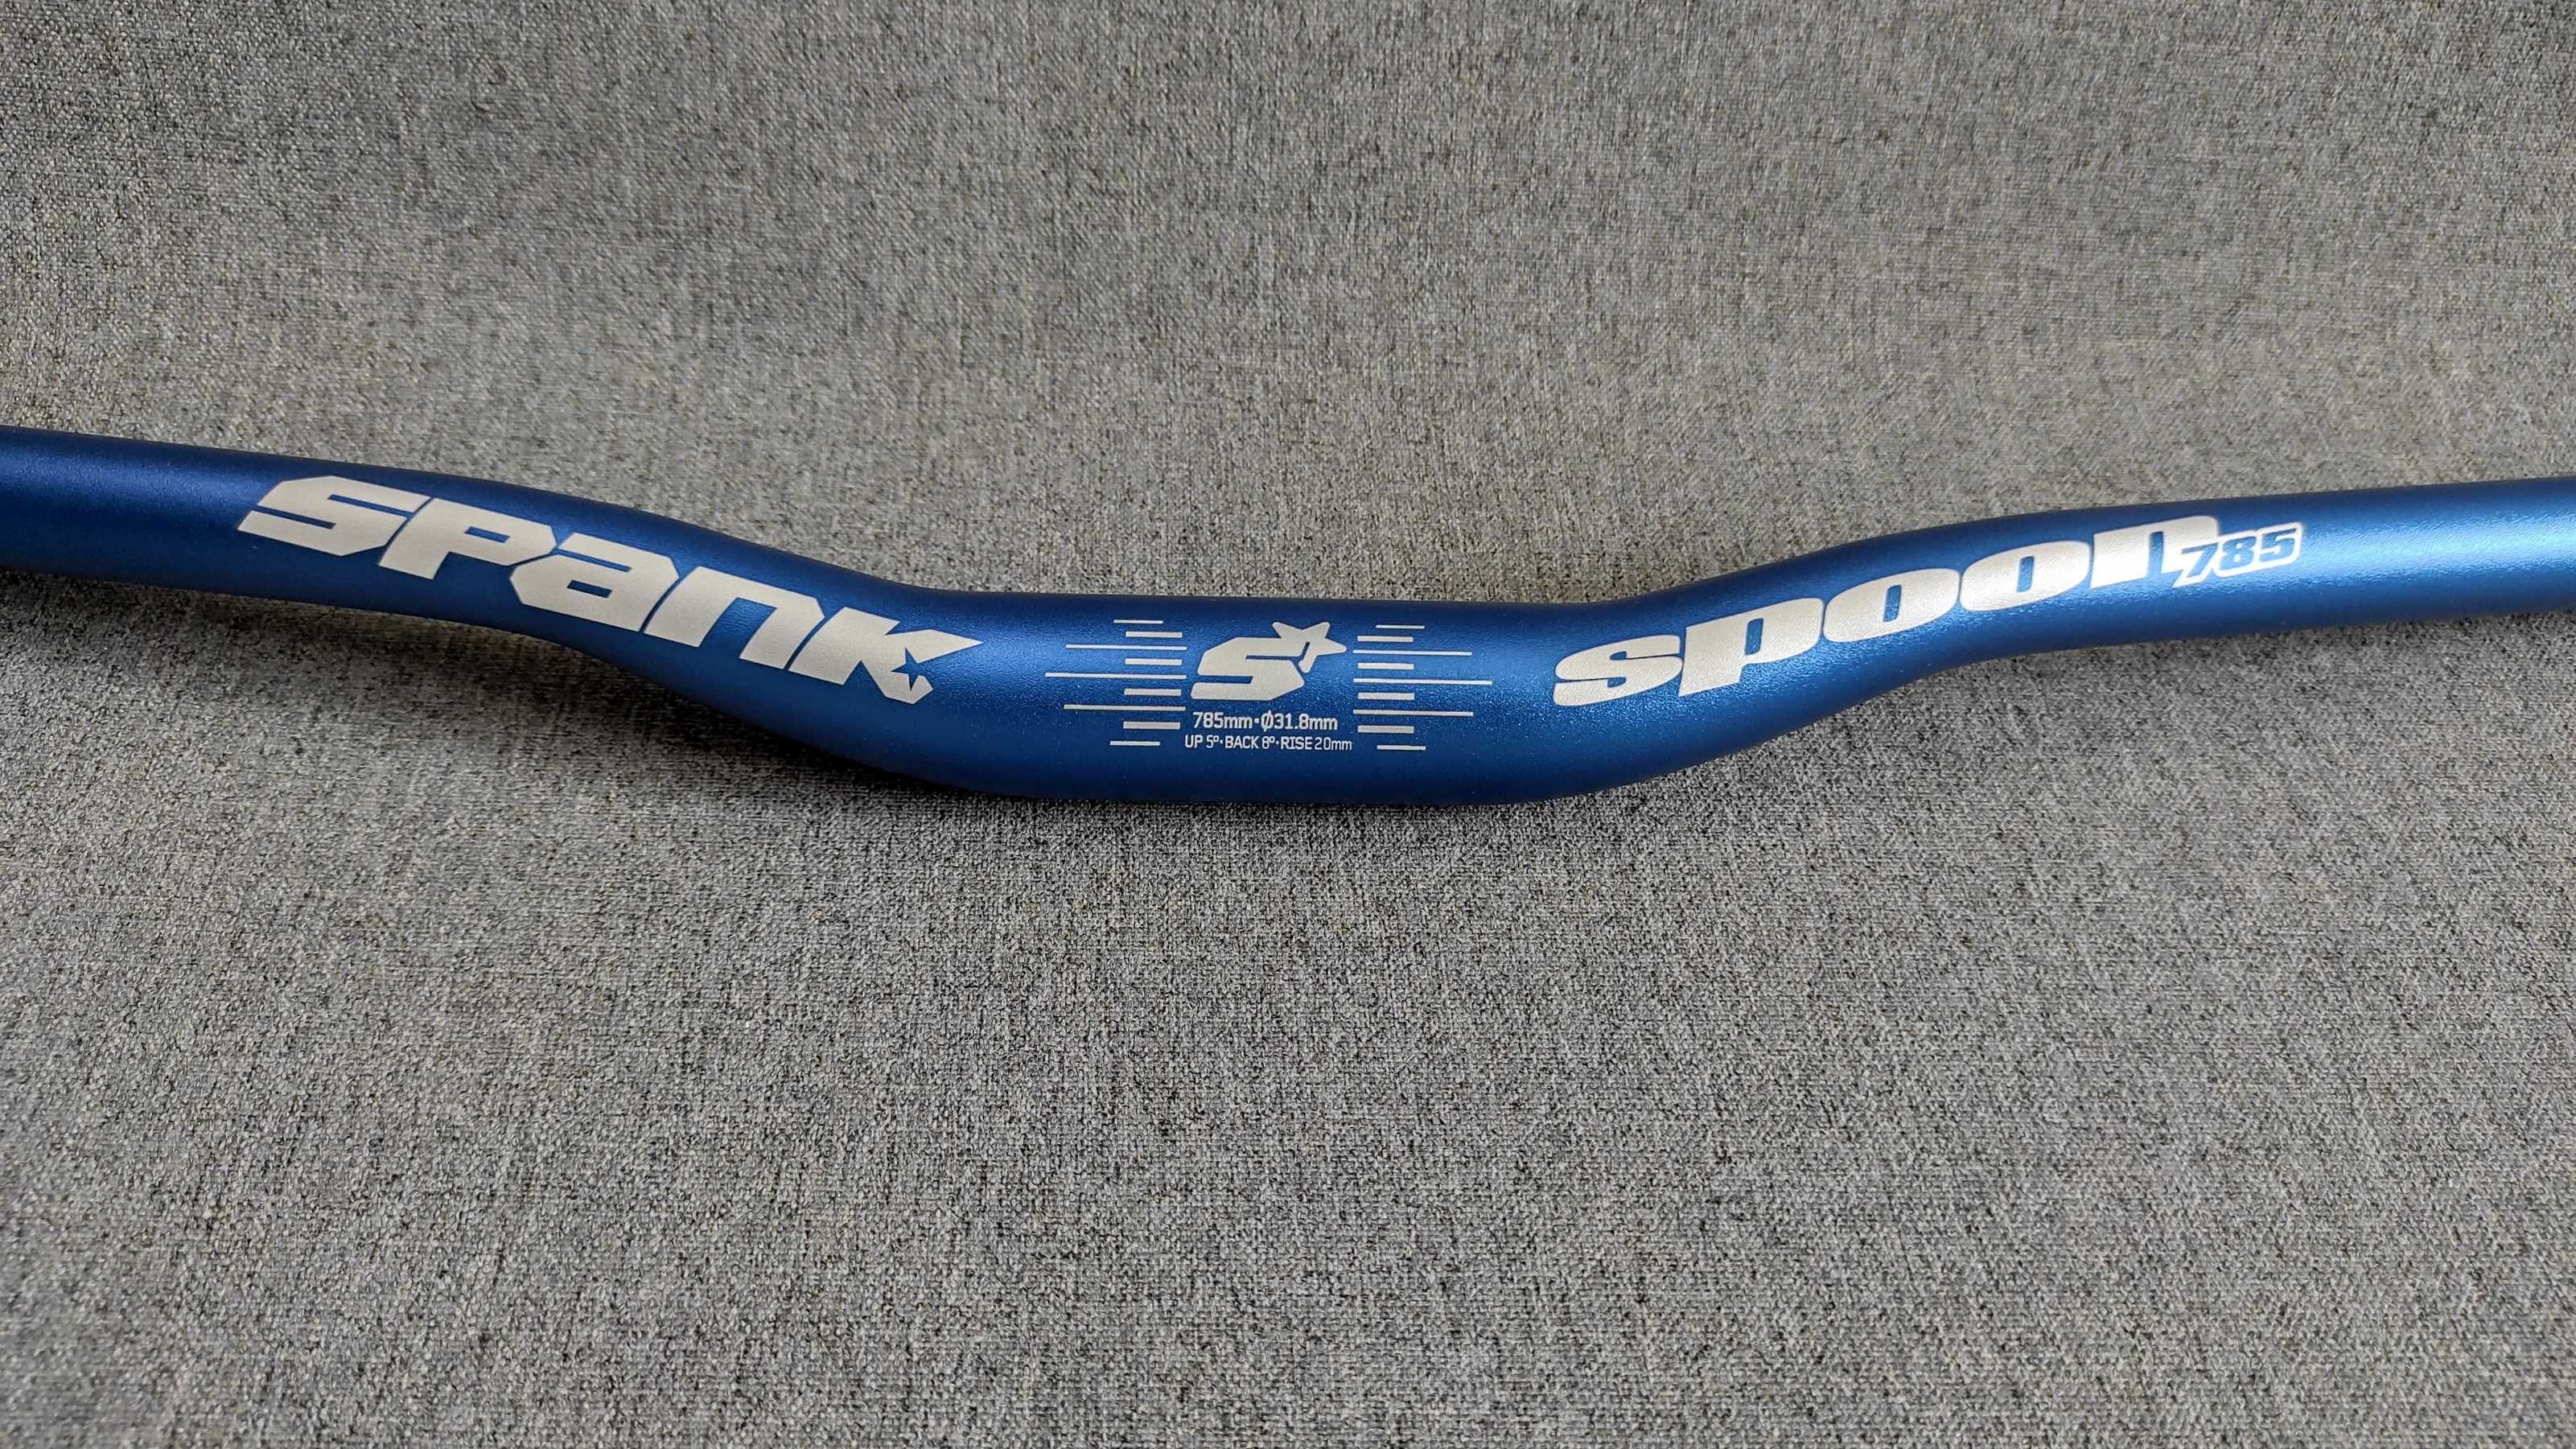 Руль Spank Spoon 785 (31,8mm х 785mm), Новый